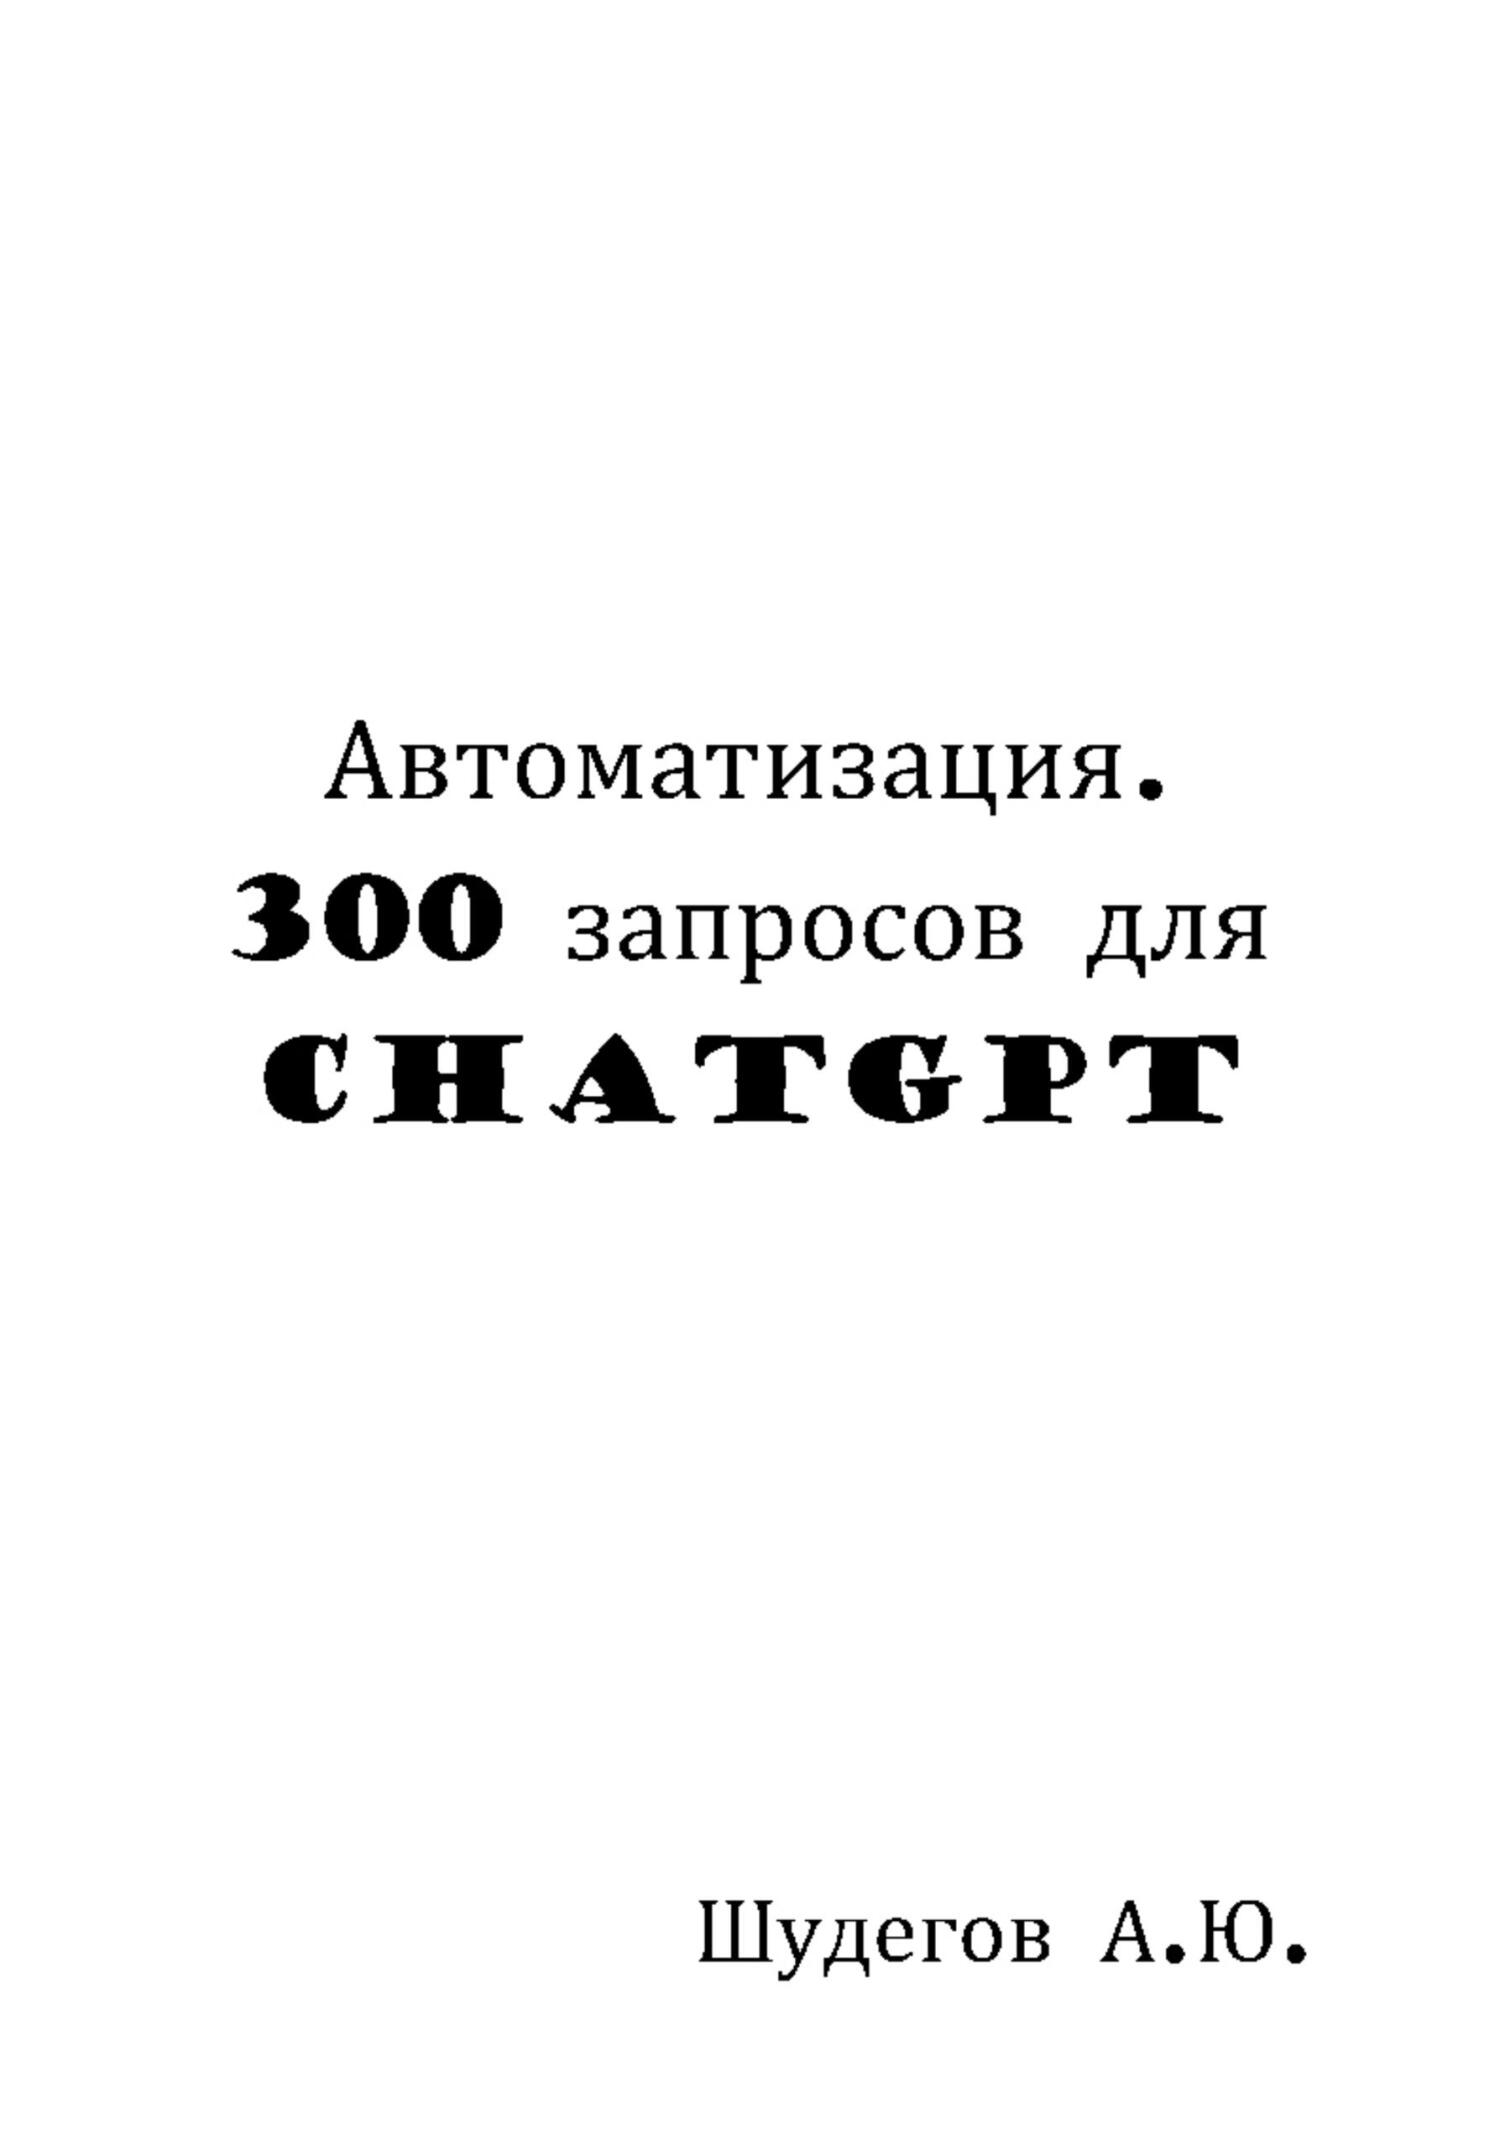 обложка книги Автоматизация. 300 запросов для ChatGPT